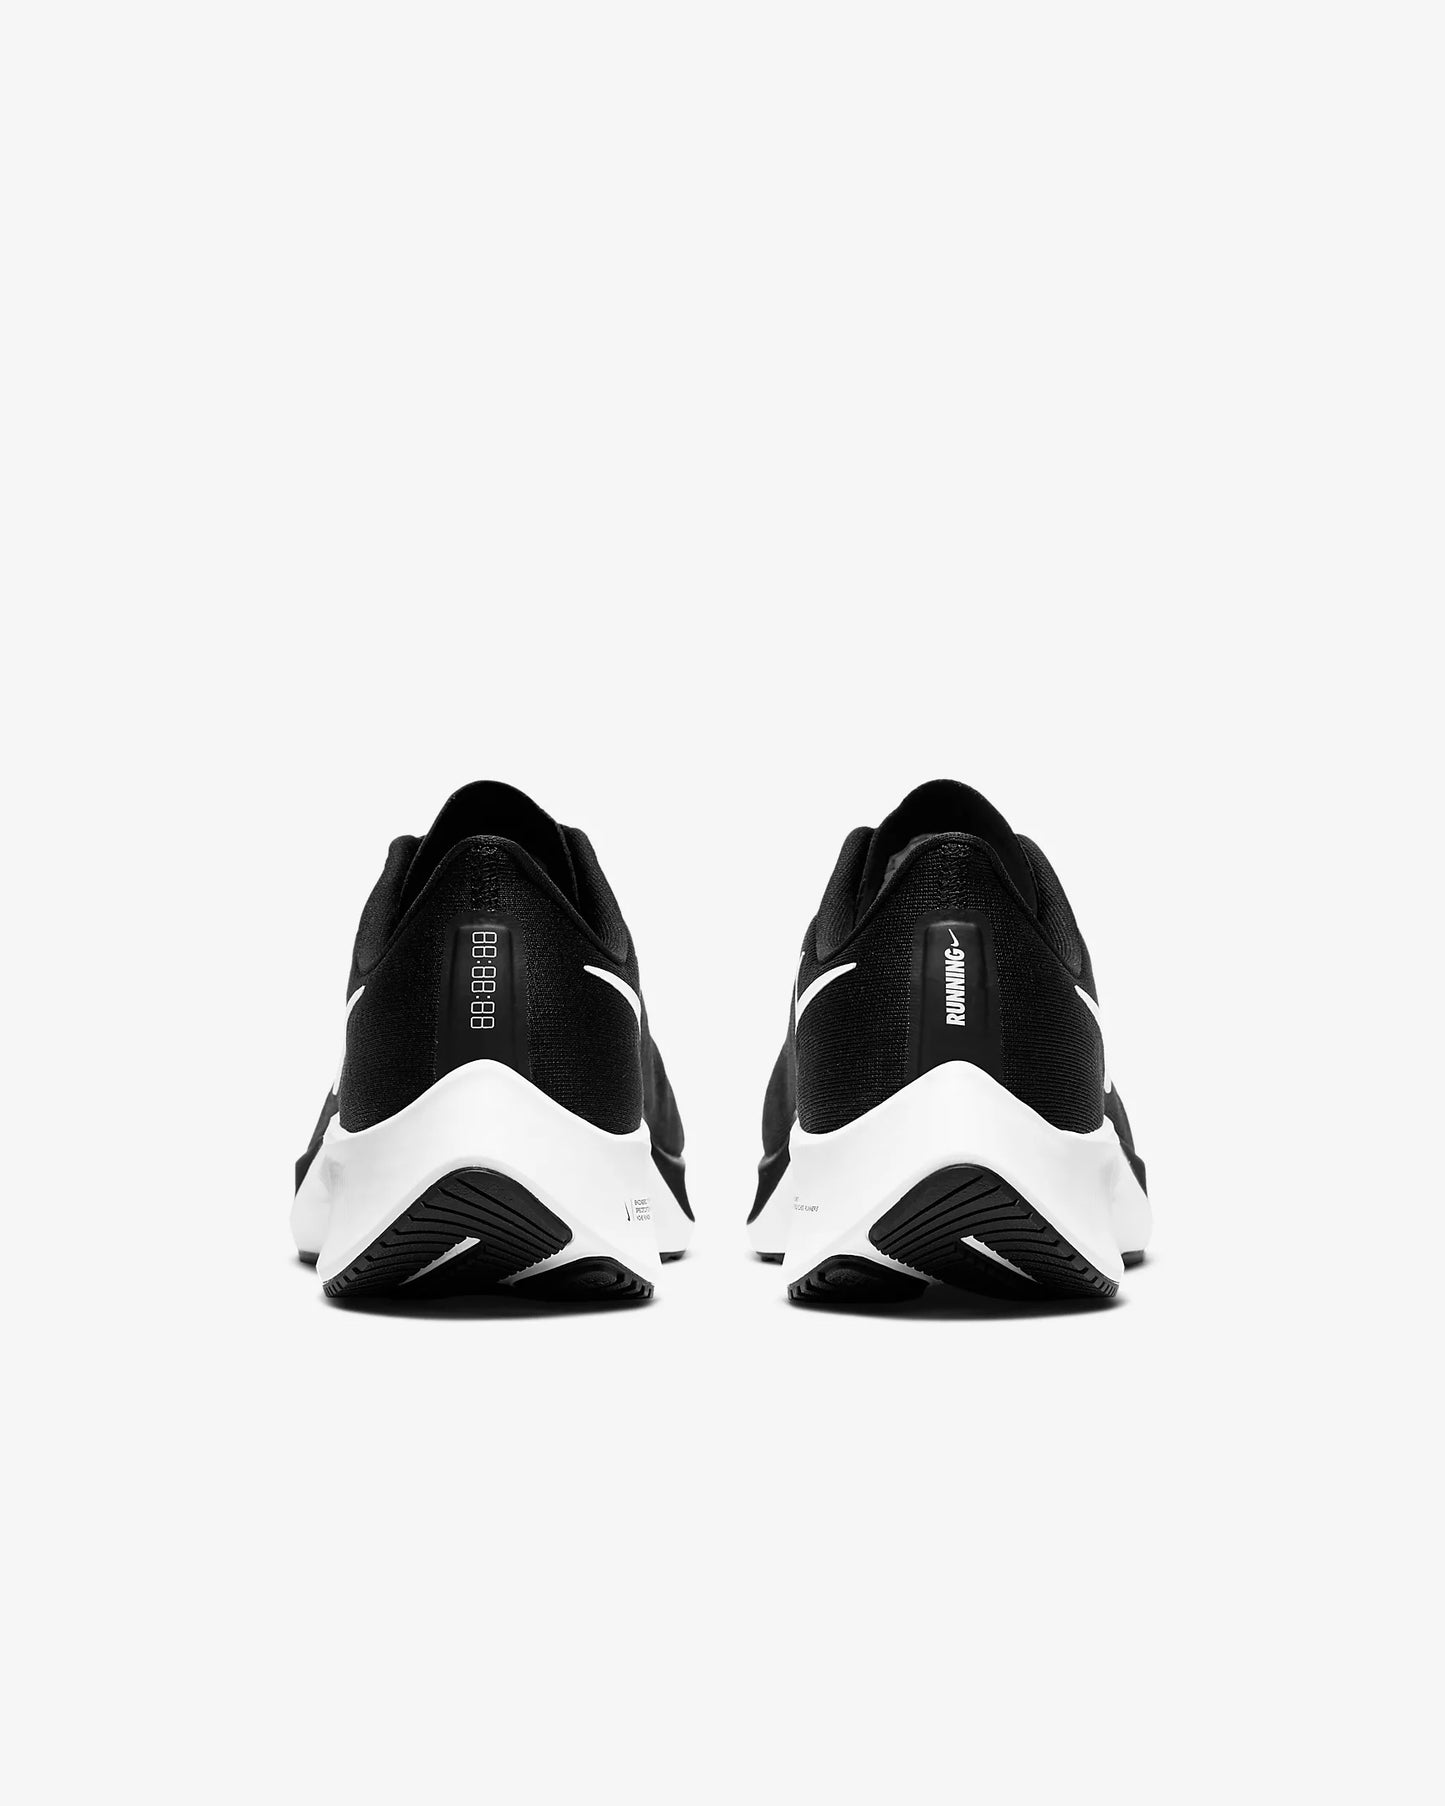 Men's Nike Air Zoom Pegasus 37 Running Shoes, BQ9646 002 Multi Sizes Black/White